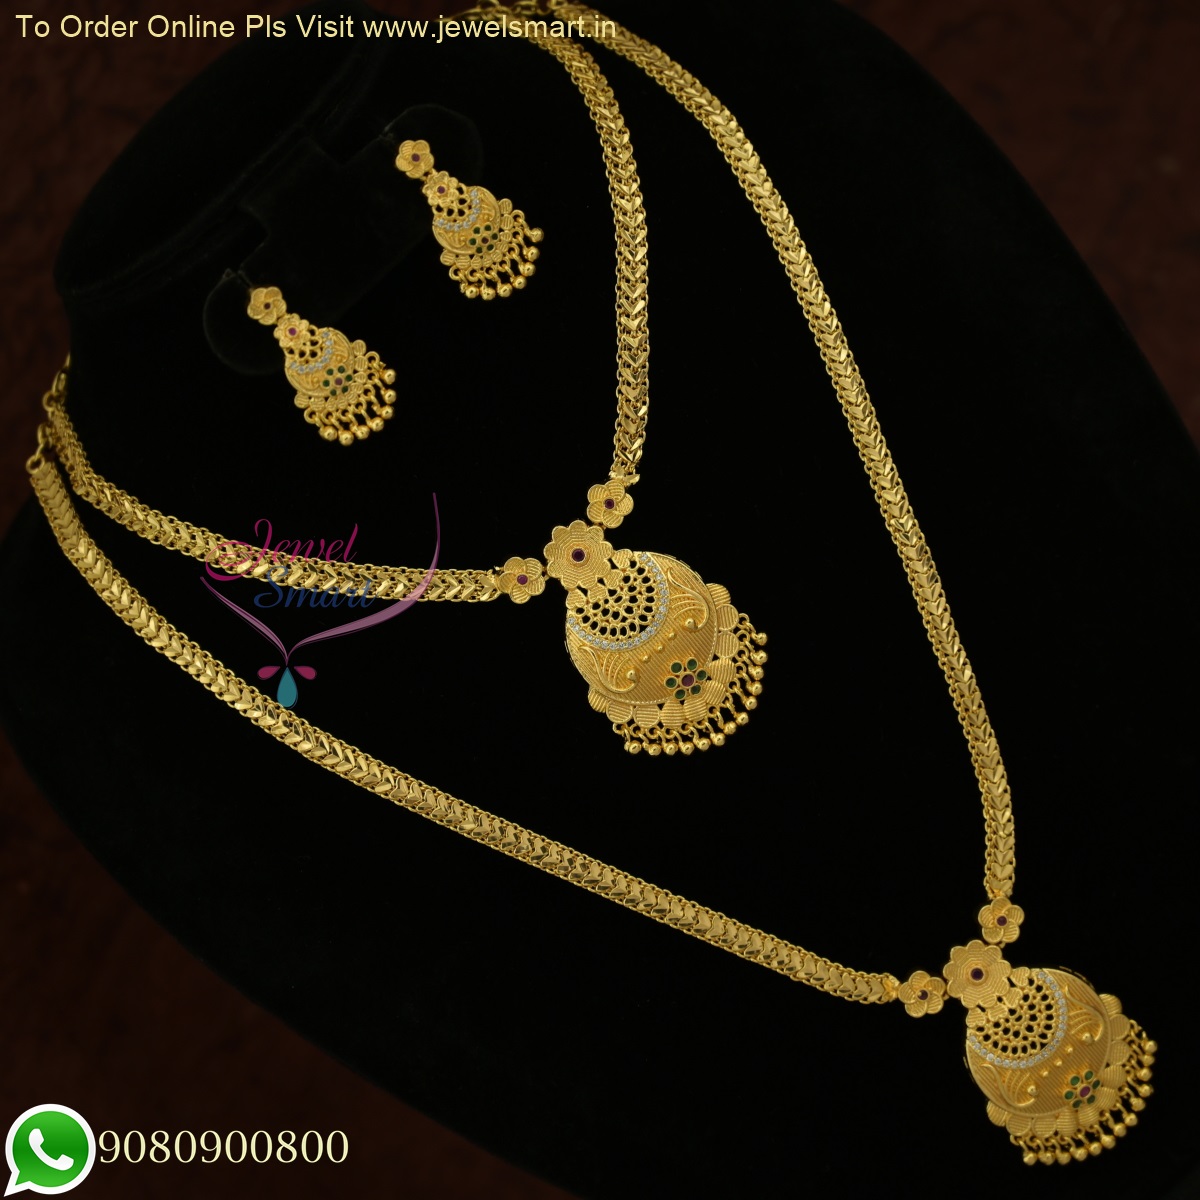 VeroniQ Trends-Elegant Kundan Long Necklace with Pearls -Kundan Necklace-Meenakari  Necklace-Indian Jewelry-VC - VeroniQ Trends